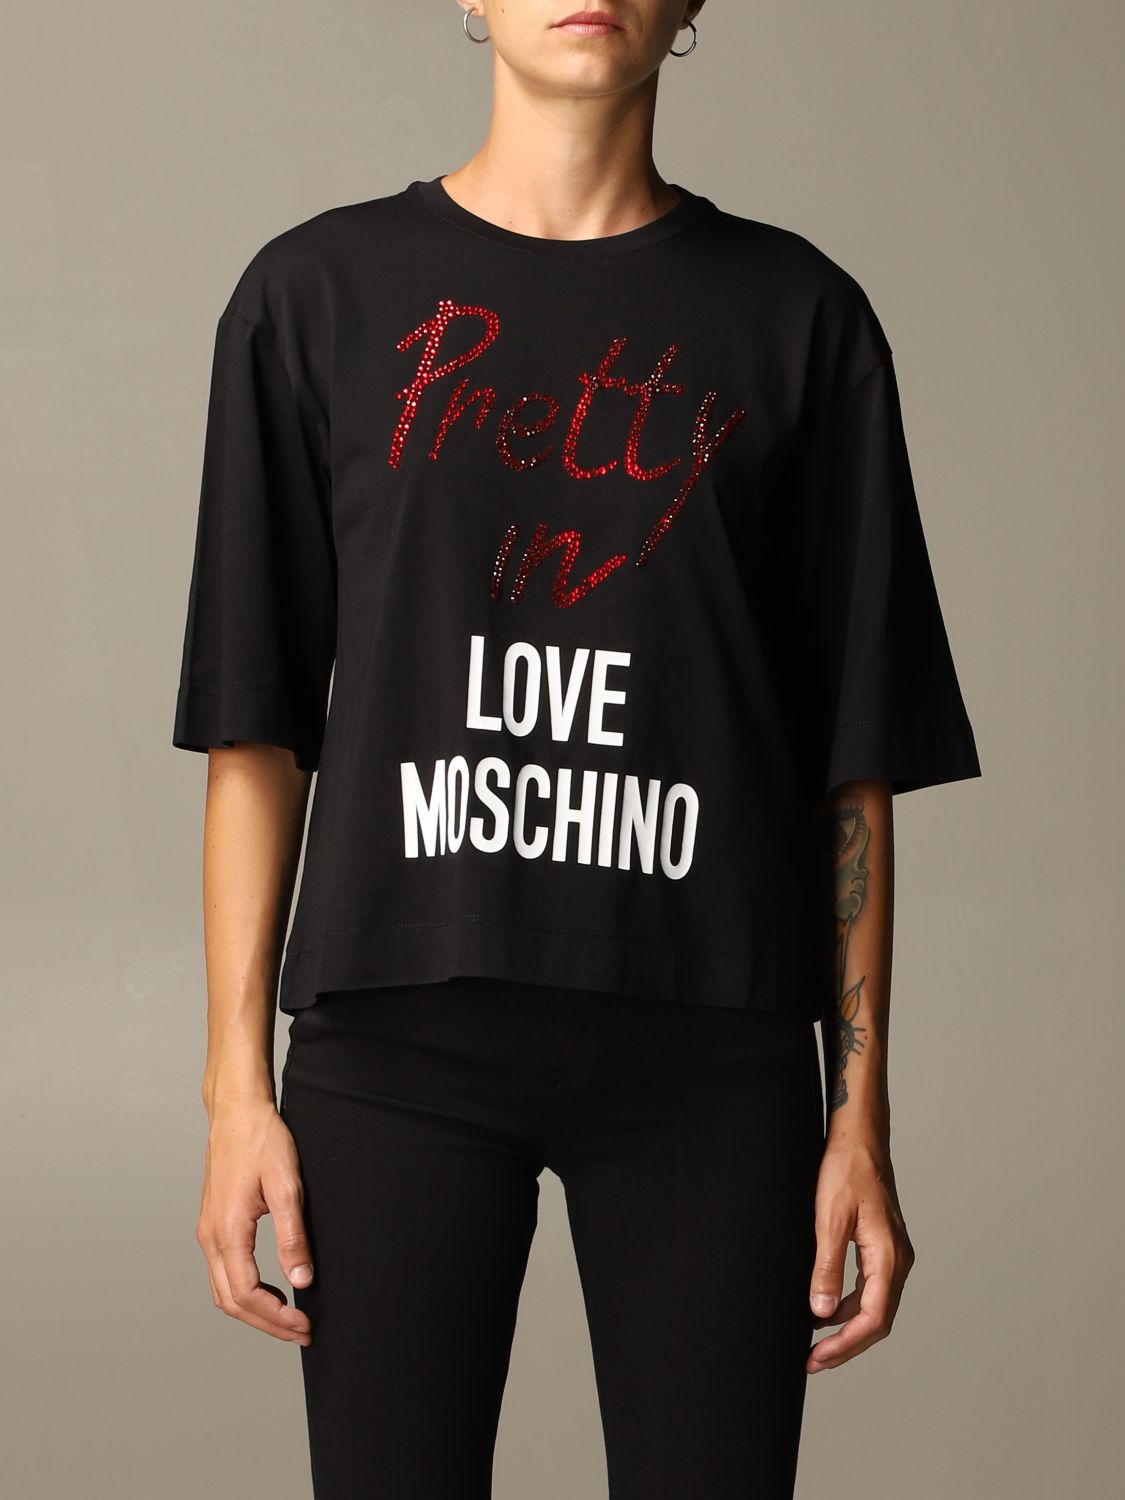 i love moschino t shirt